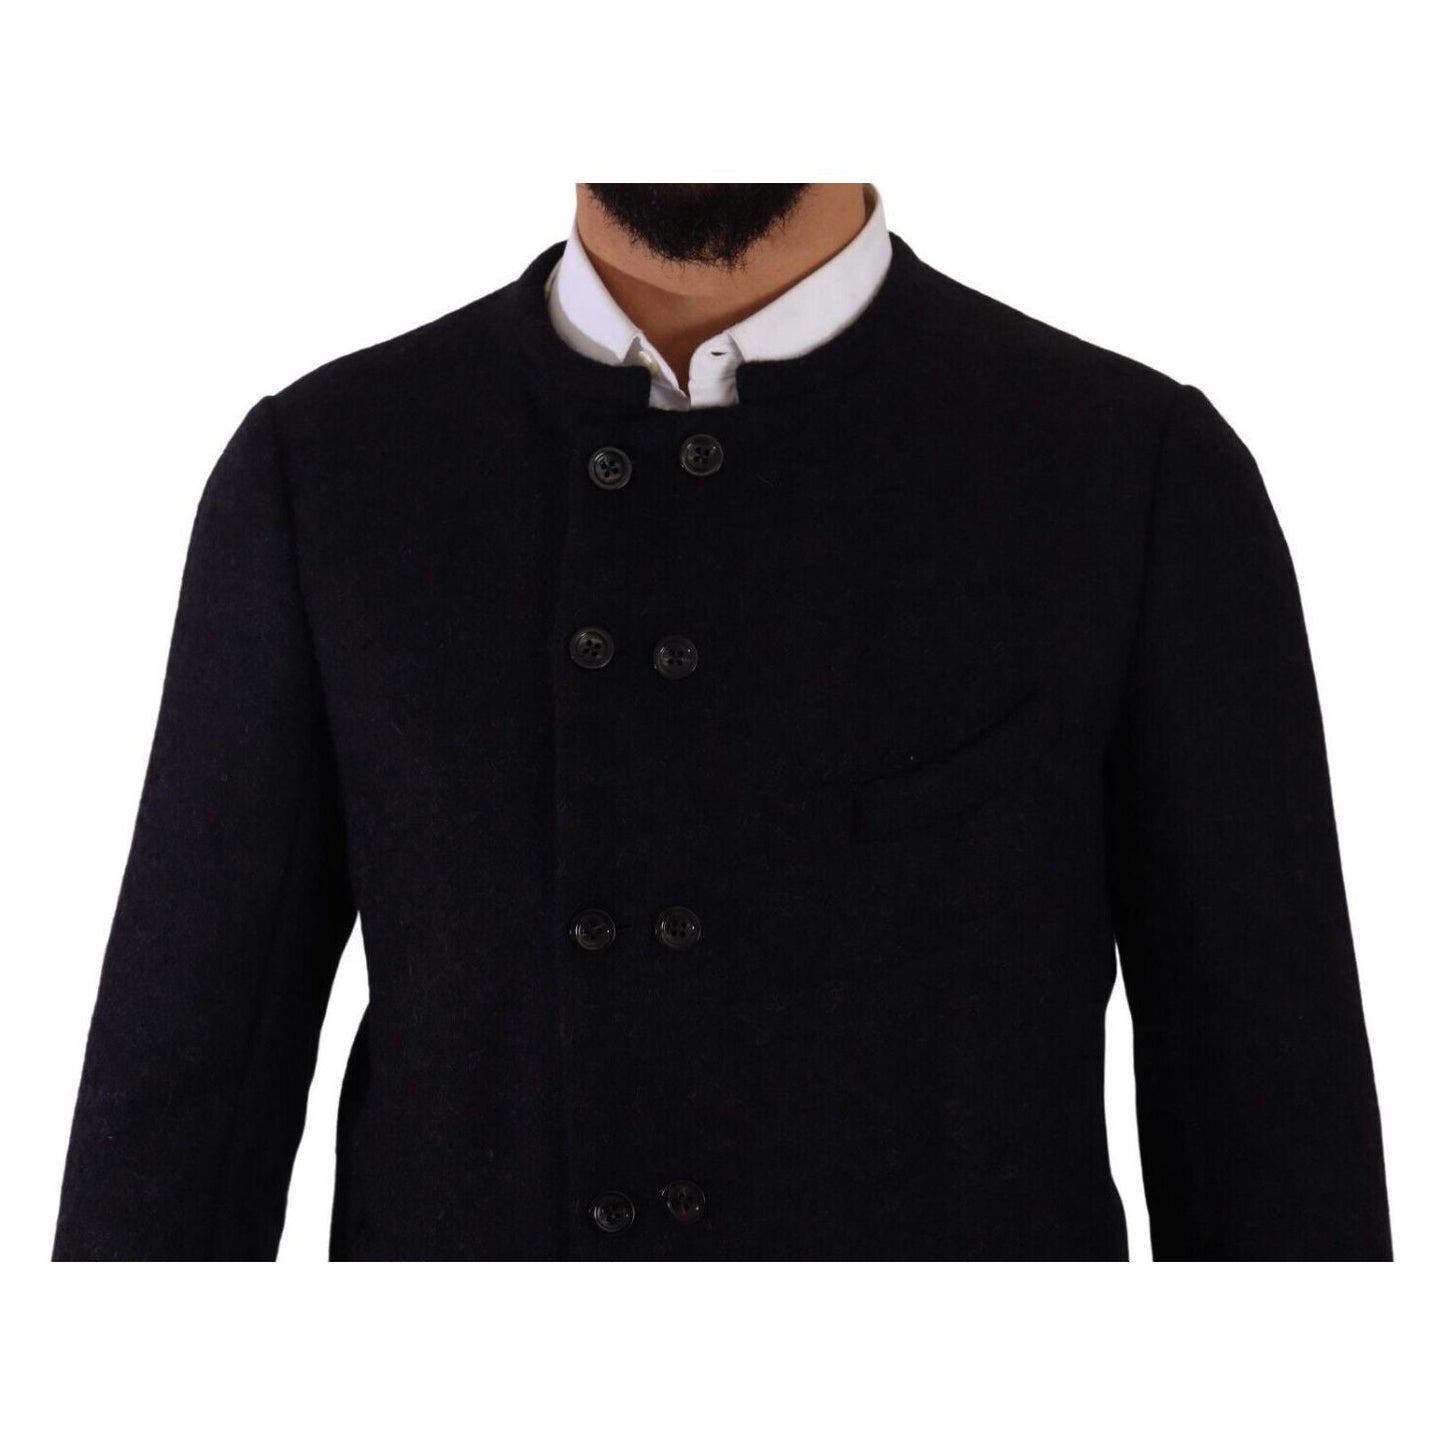 Dolce & Gabbana Elegant Dark Grey Alpaca Blend Jacket gray-alpaca-button-down-men-coat-jacket